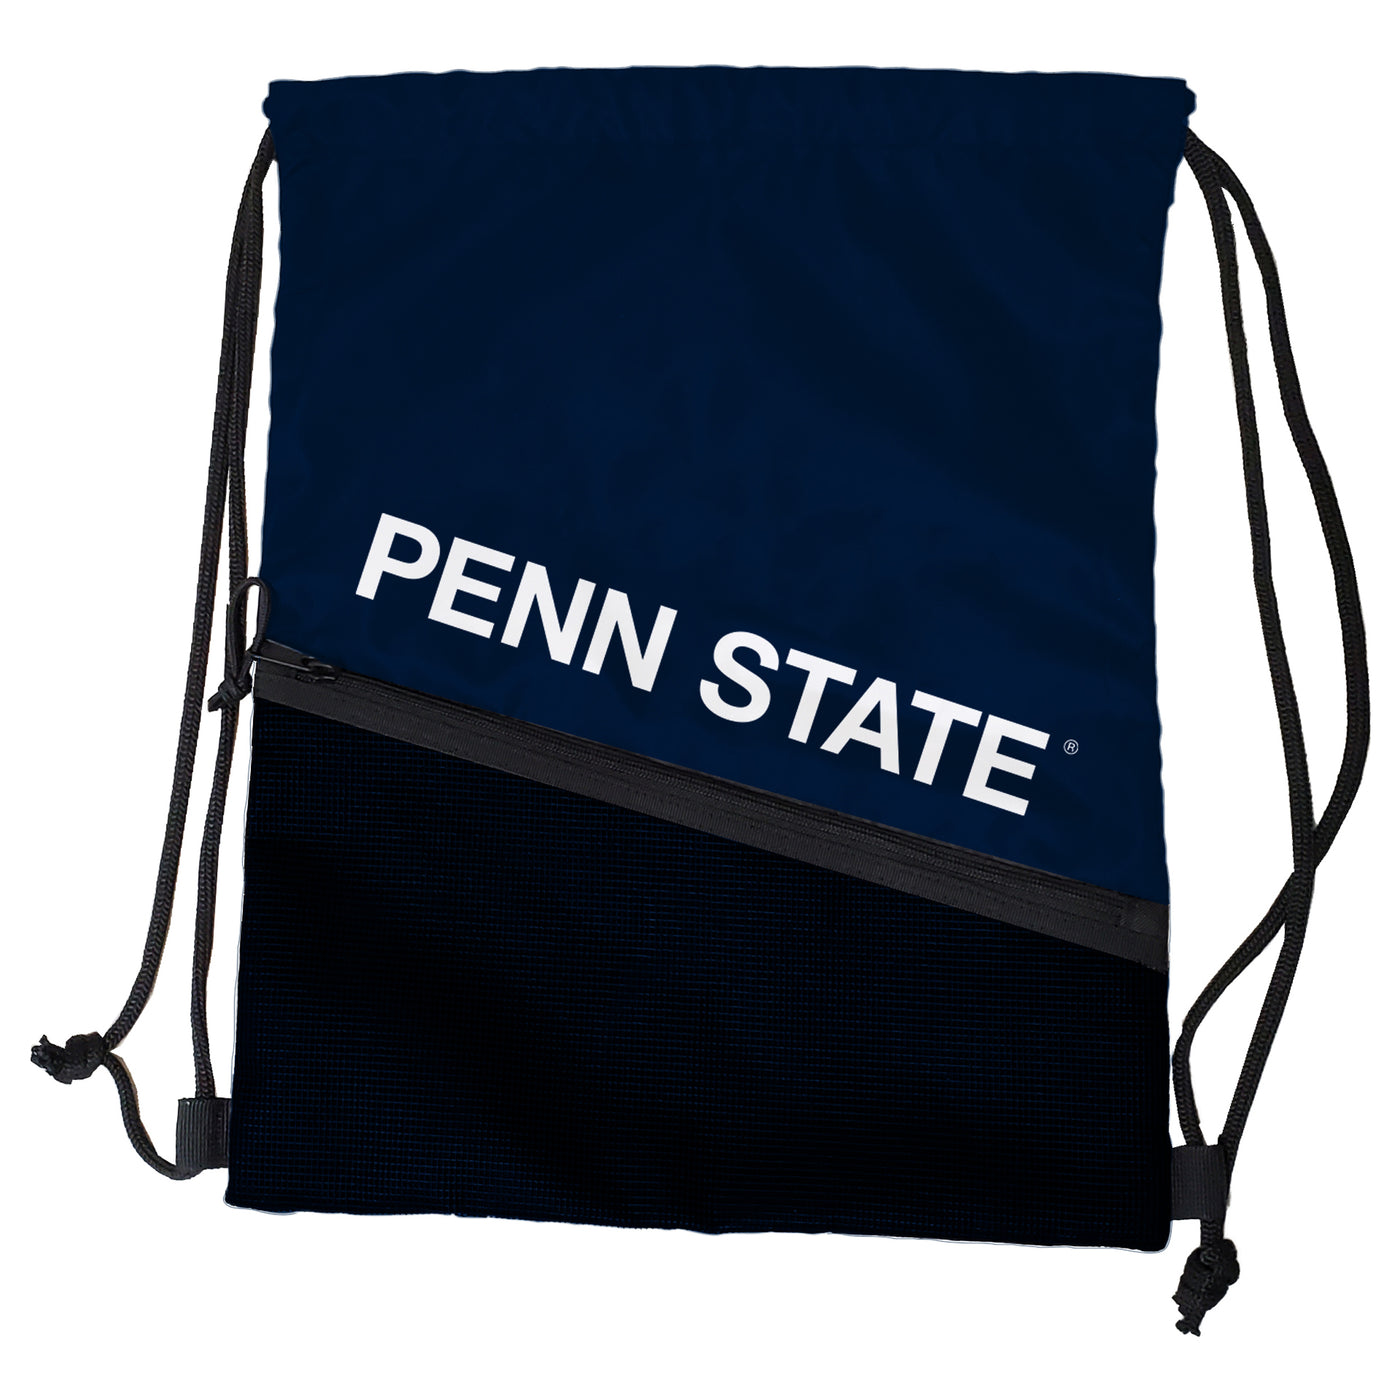 Penn State Tilt Backsack